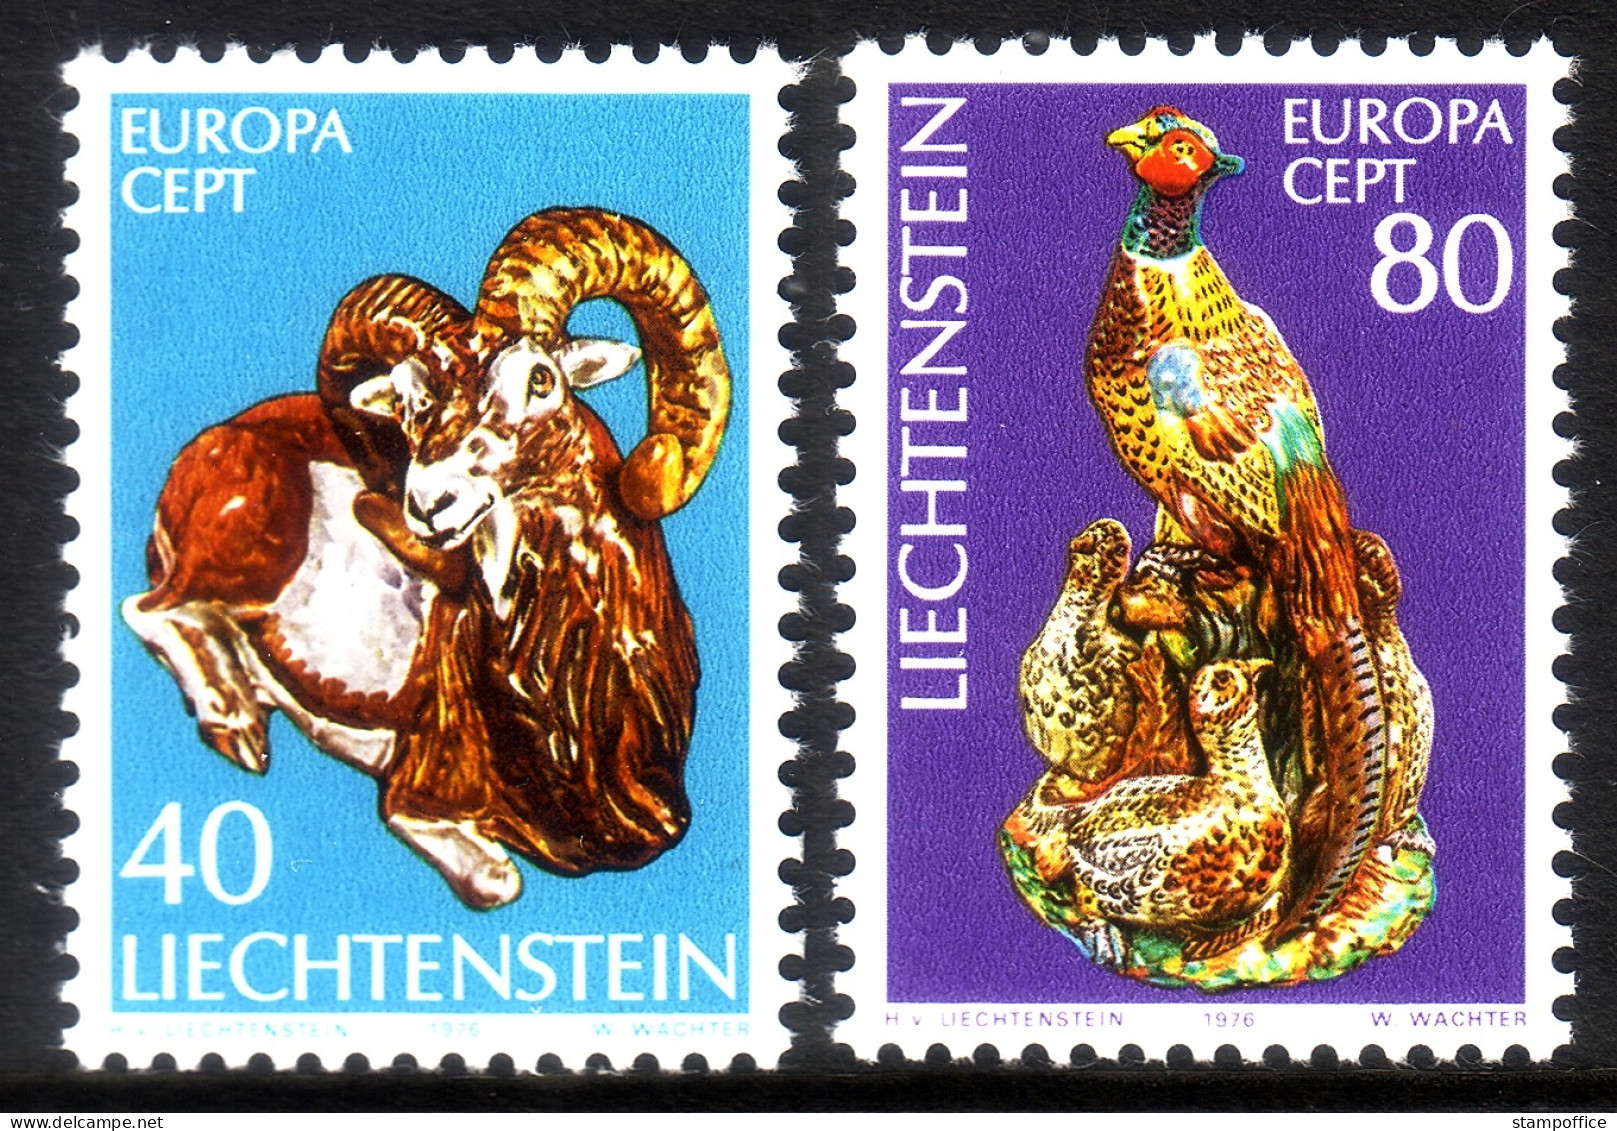 LIECHTENSTEIN MI-NR. 642-643 POSTFRISCH(MINT) EUROPA 1976 - KUNSTHANDWERK - 1976